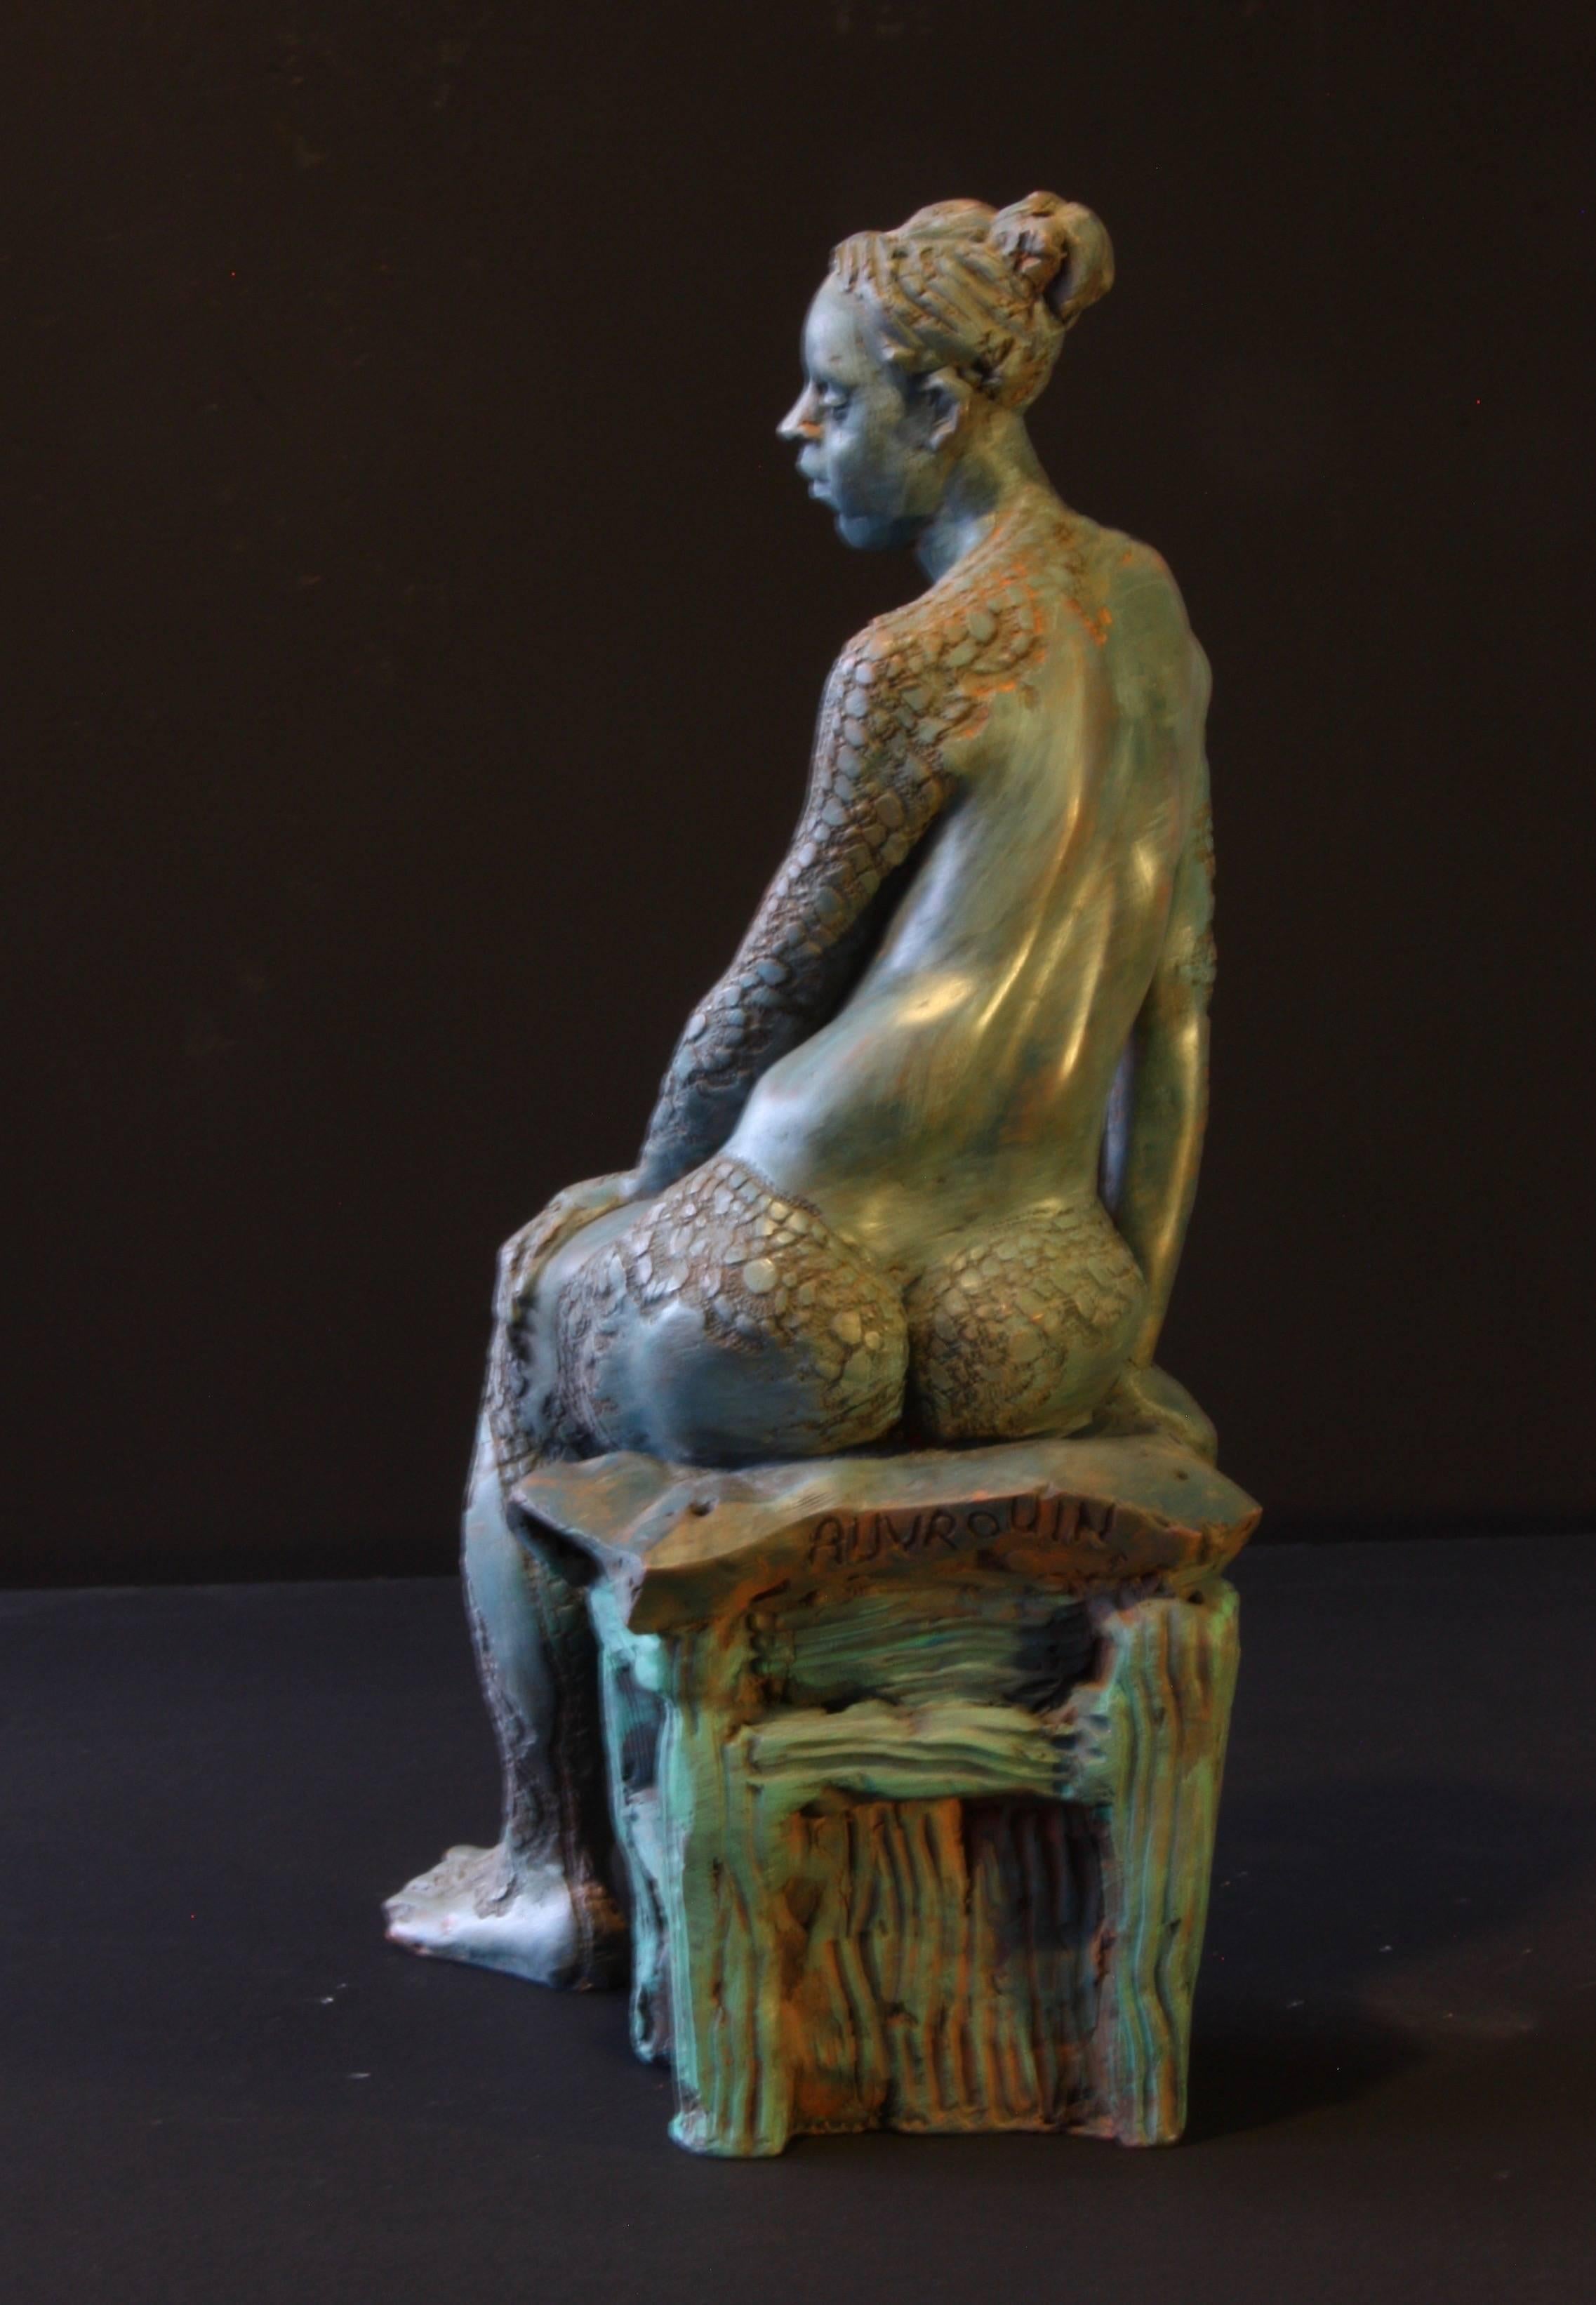 Bildhauerei in  terrakotta
Höhe 34 cm  x Breite 15 cm  x Tiefe .22 cm
Gewicht: 6 kg 



- in Bronze (auf Bestellung)
